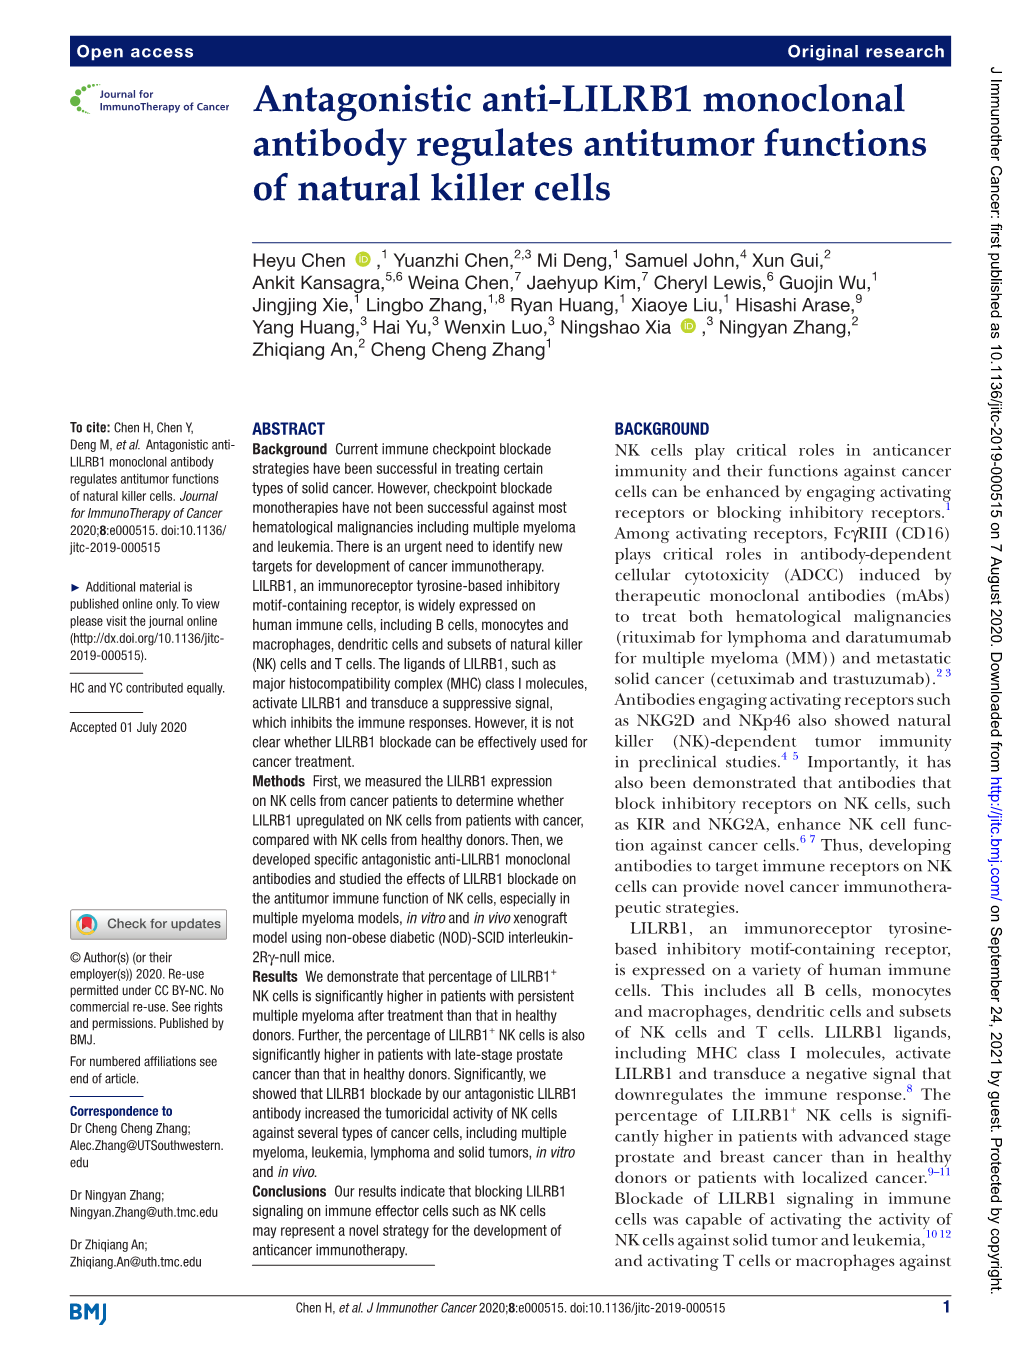 Antagonistic Anti-LILRB1 Monoclonal Antibody Regulates Antitumor Functions of Natural Killer Cells